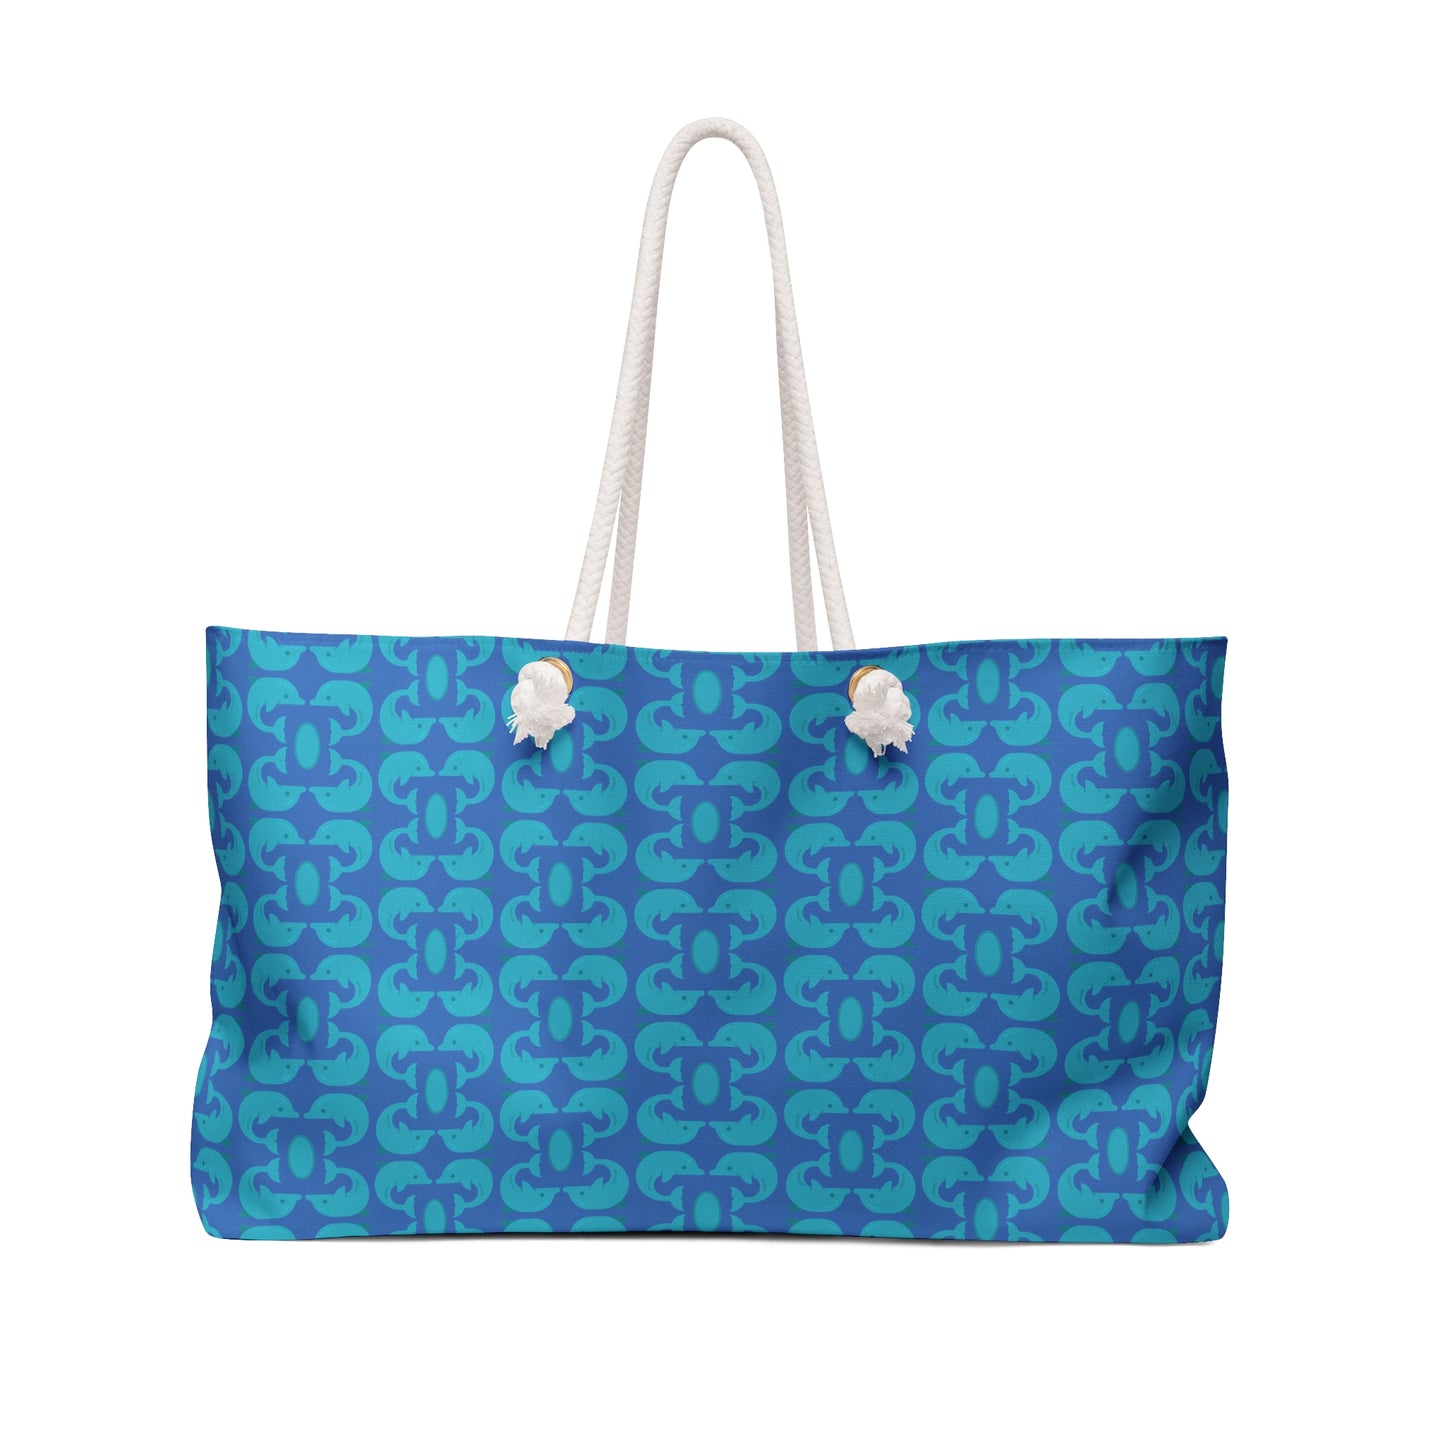 Playful Dolphins - Maximum Blue Green 33cccc - Azure 0080FF - Weekender Bag